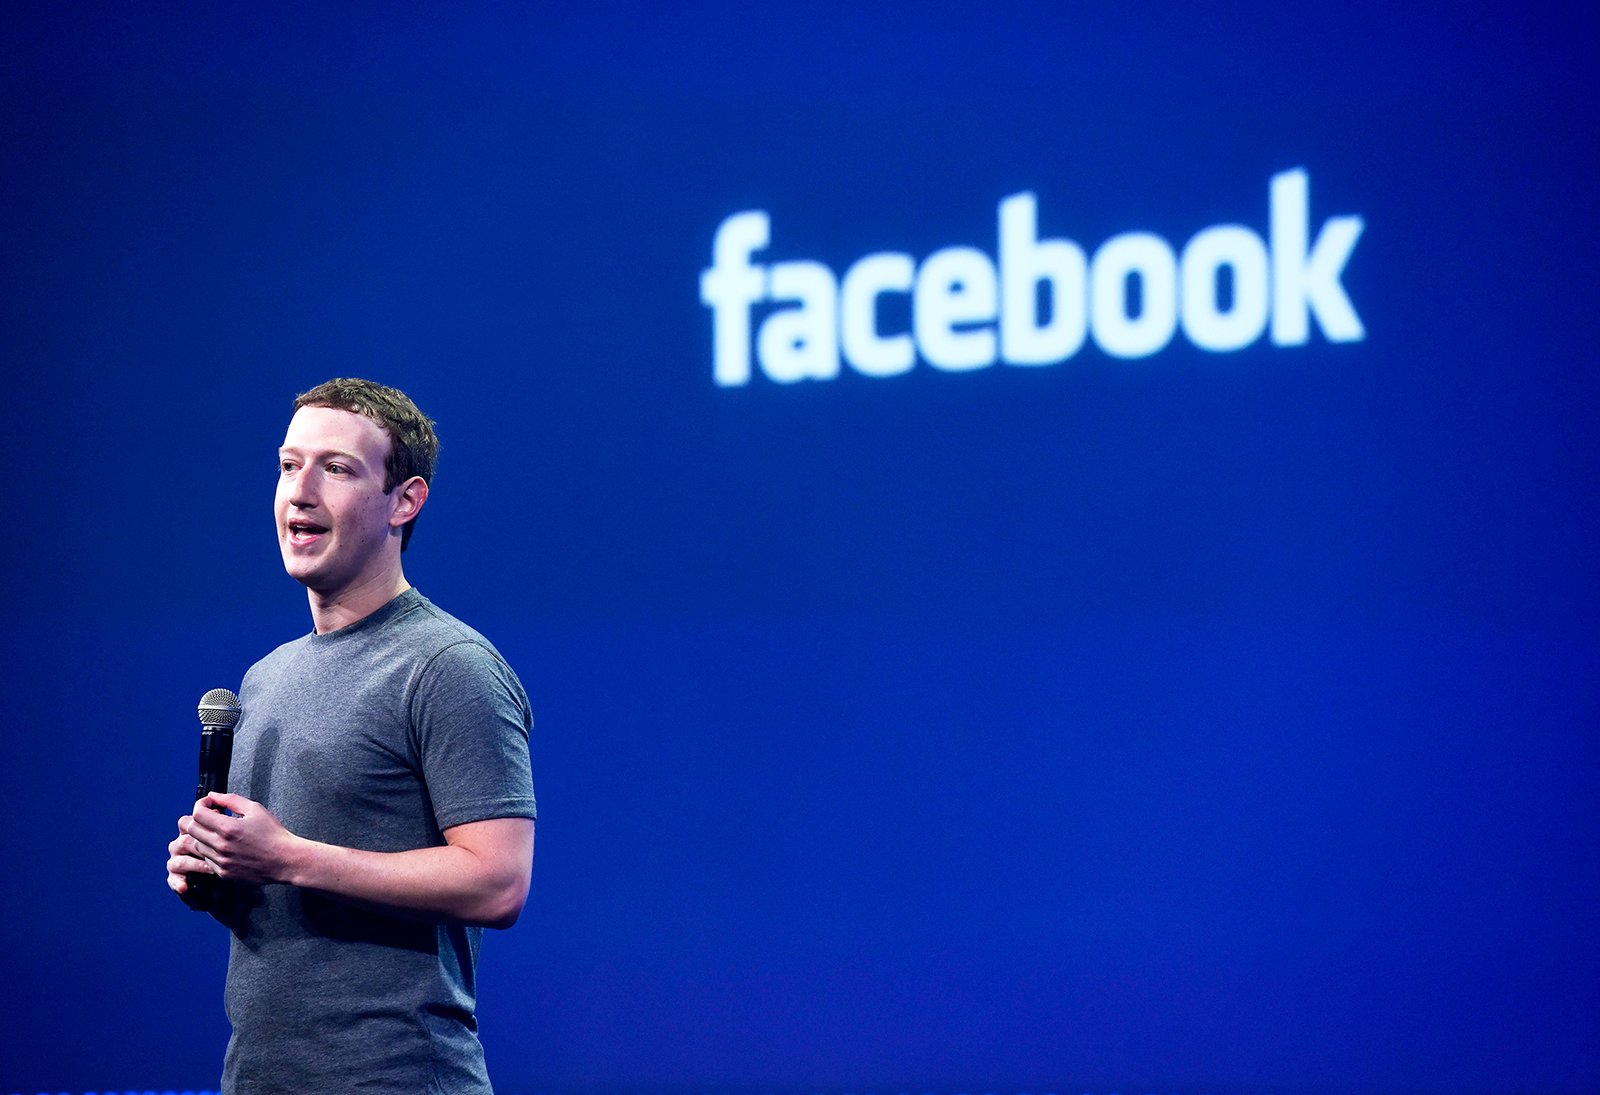 마크 주커버그(Mark Zuckerberg) 페이스북 최고경영자(CEO)가 8년 25월 2015일 미국 캘리포니아 샌프란시스코에서 열린 페이스북 FXNUMX 개발자 컨퍼런스에서 연설하고 있다. 회사는 수익을 높입니다. 사진작가: David Paul Morris/Bloomberg via Getty Images